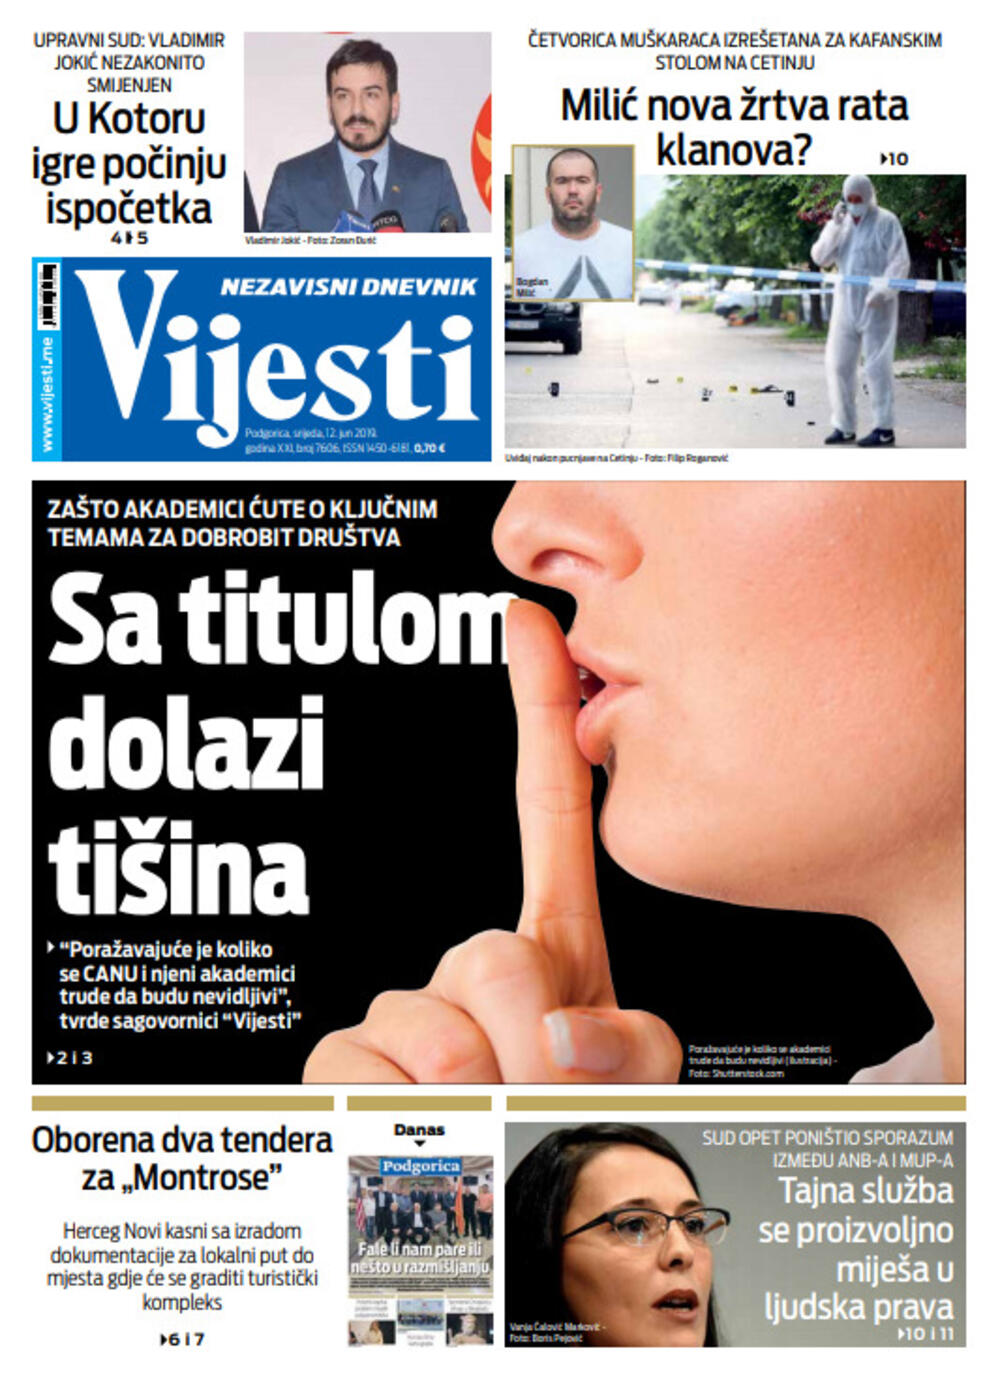 Naslovna strana "Vijesti" za 12.jun, Foto: "Vijesti"